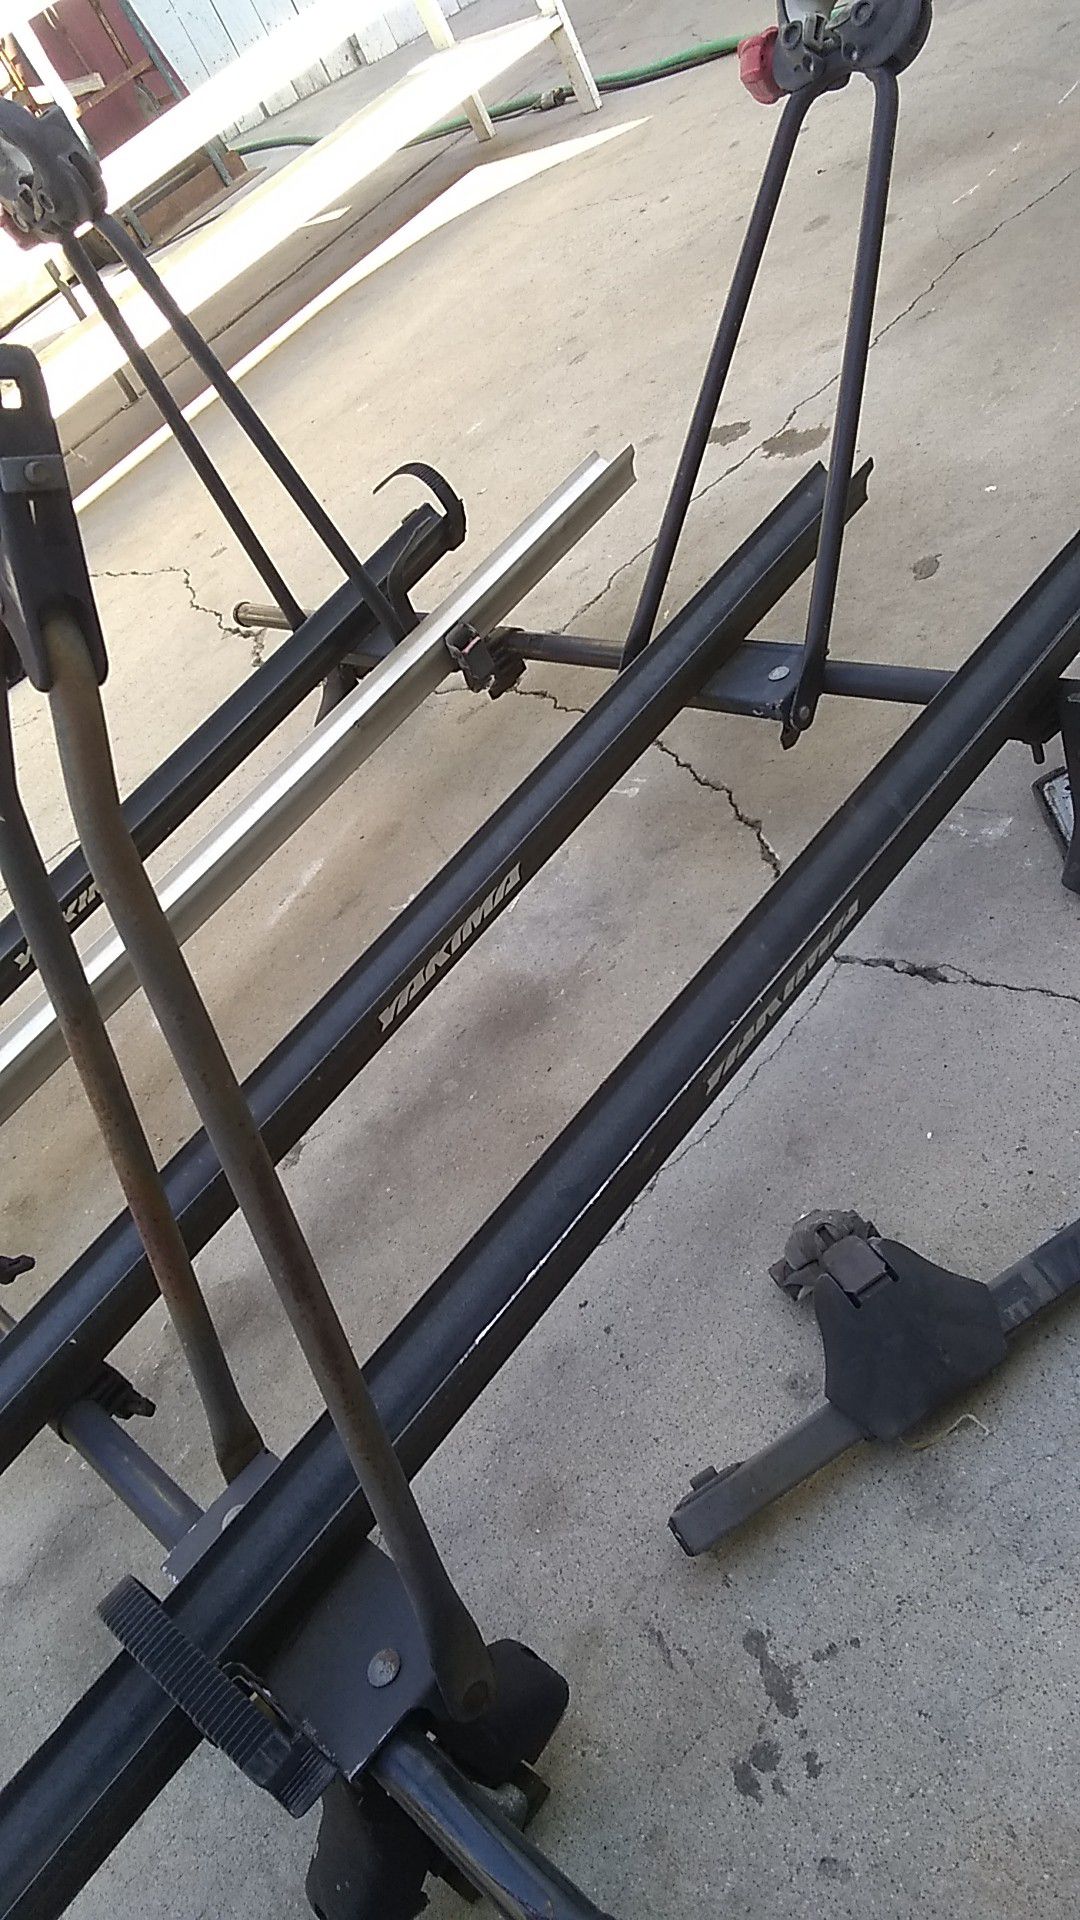 Yakima roof mount bike rack